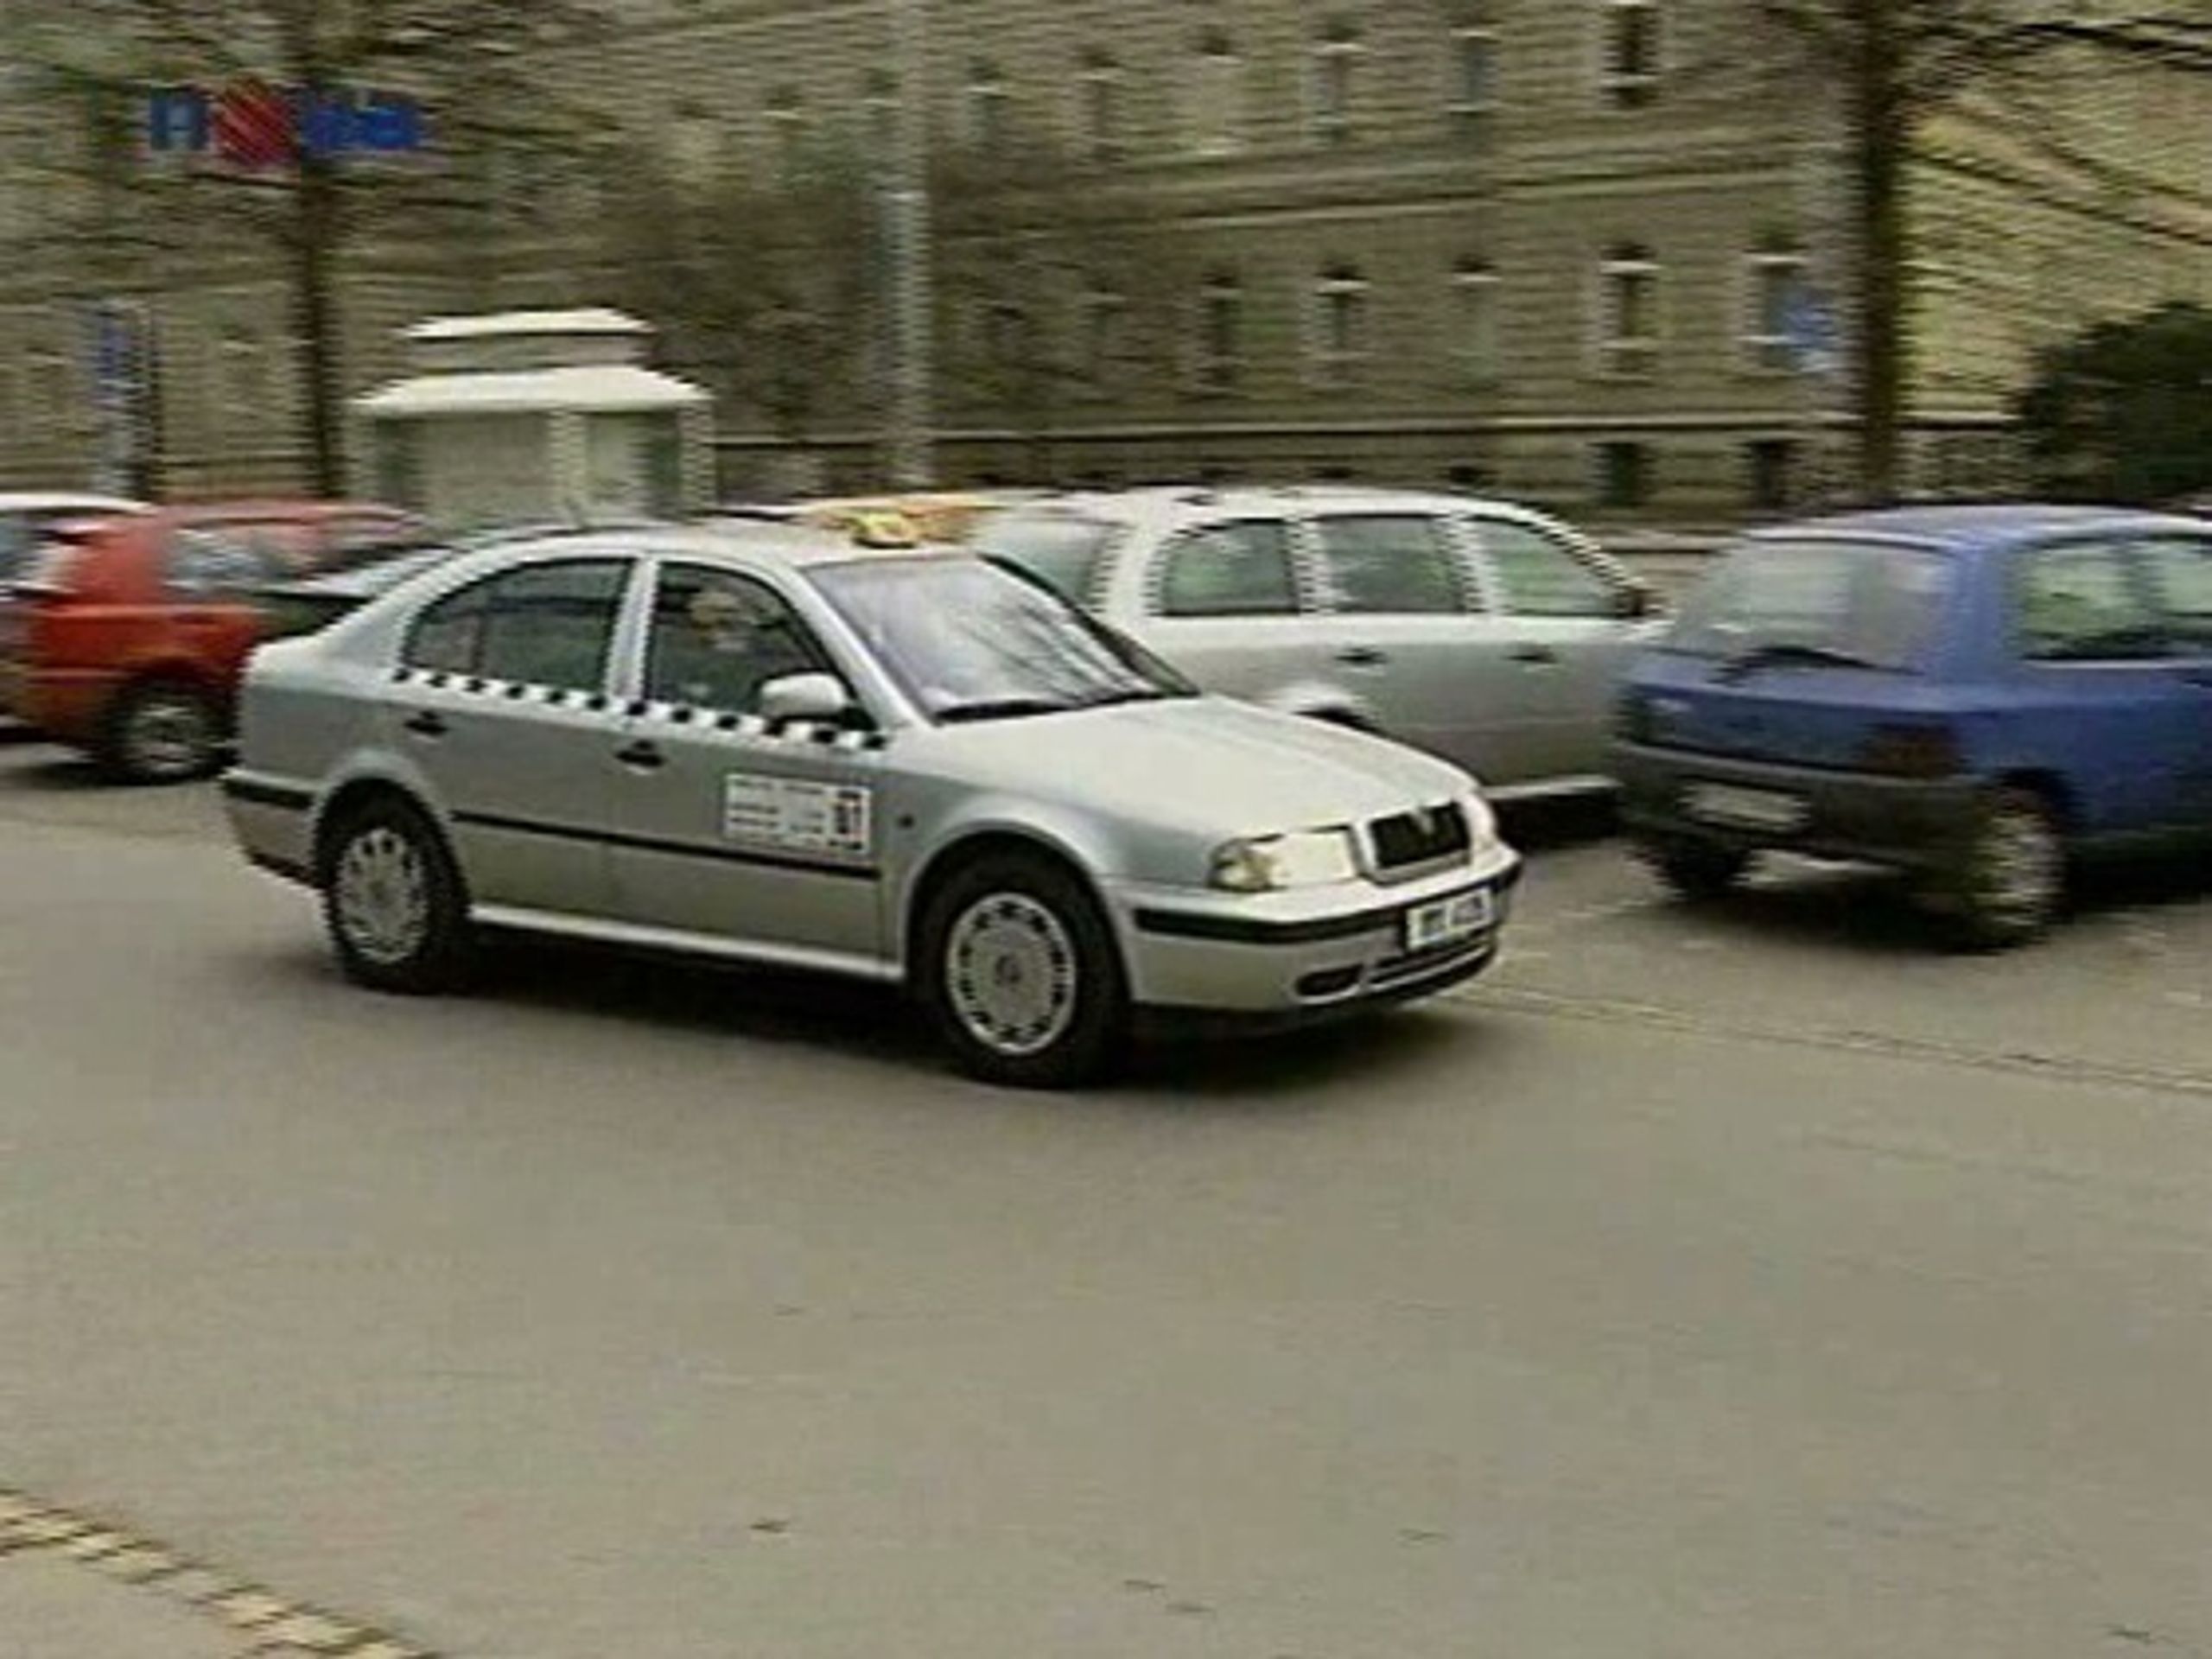 Taxislužba v Olomouci - Policie zadržela muže, jenž pobodal taxikáře (3/3)